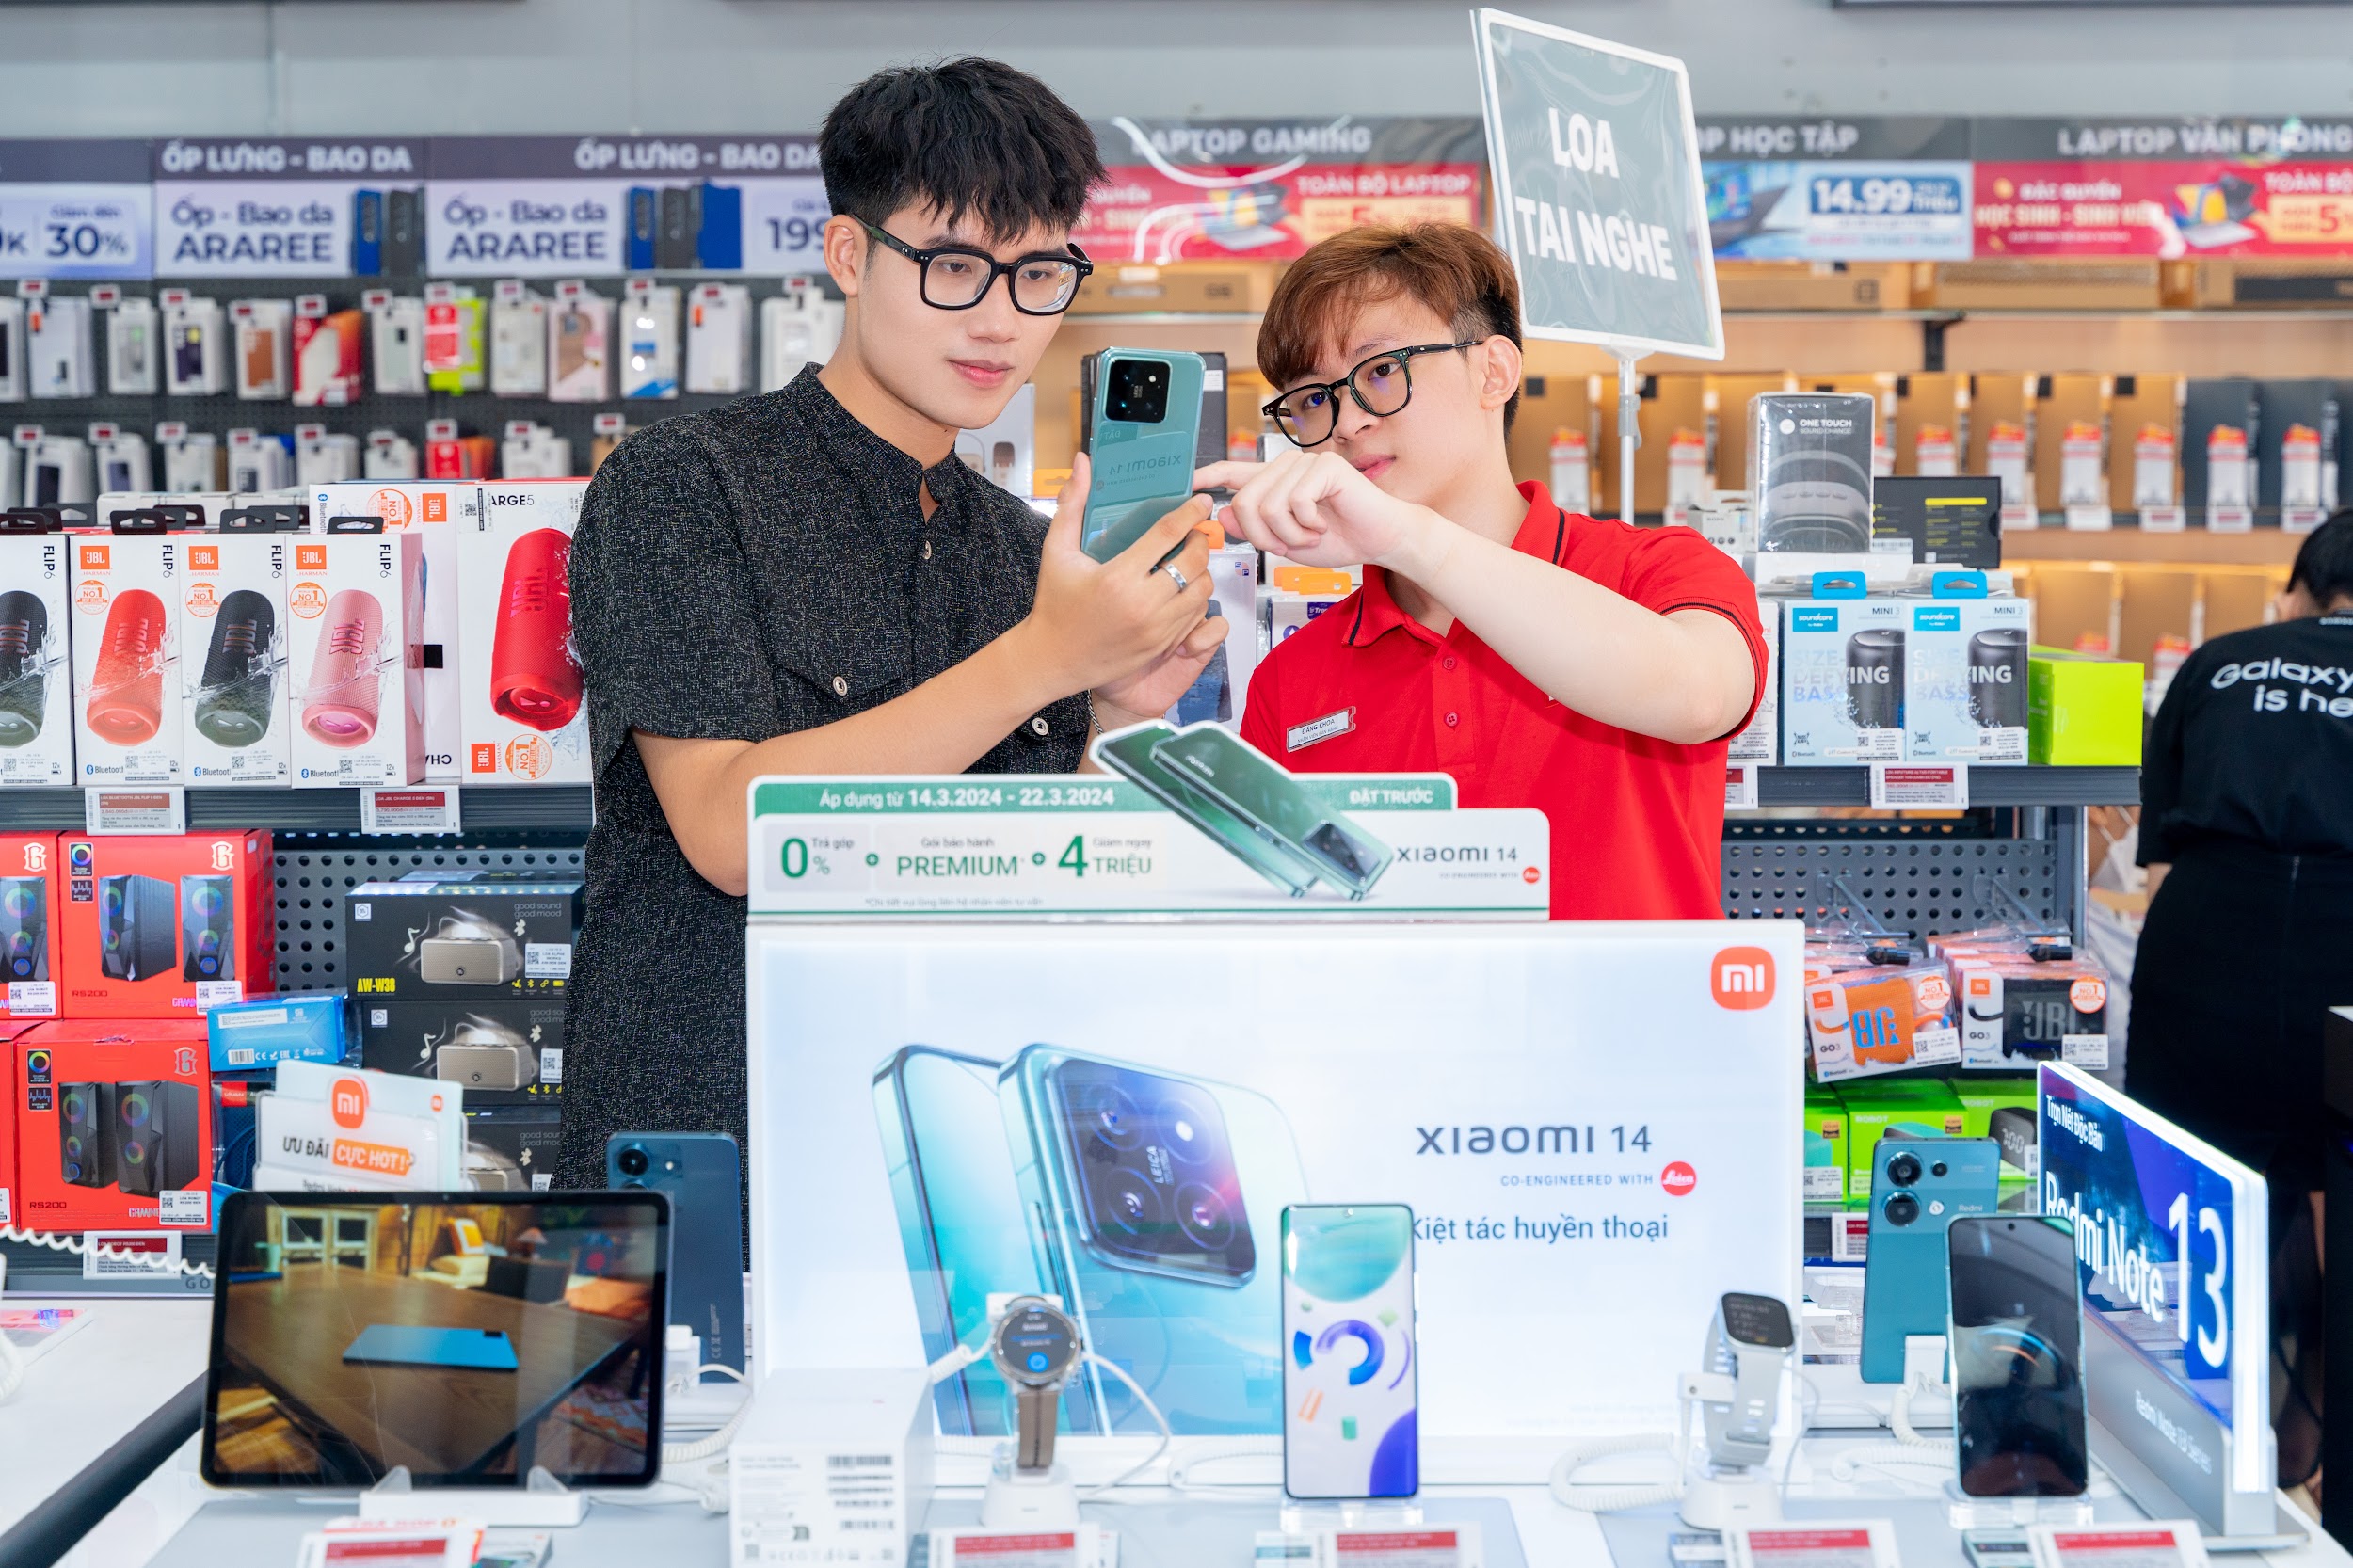 CellphoneS mở bán smartphone cao cấp Xiaomi 14, với hơn 300 khách hàng đặt trước - 1